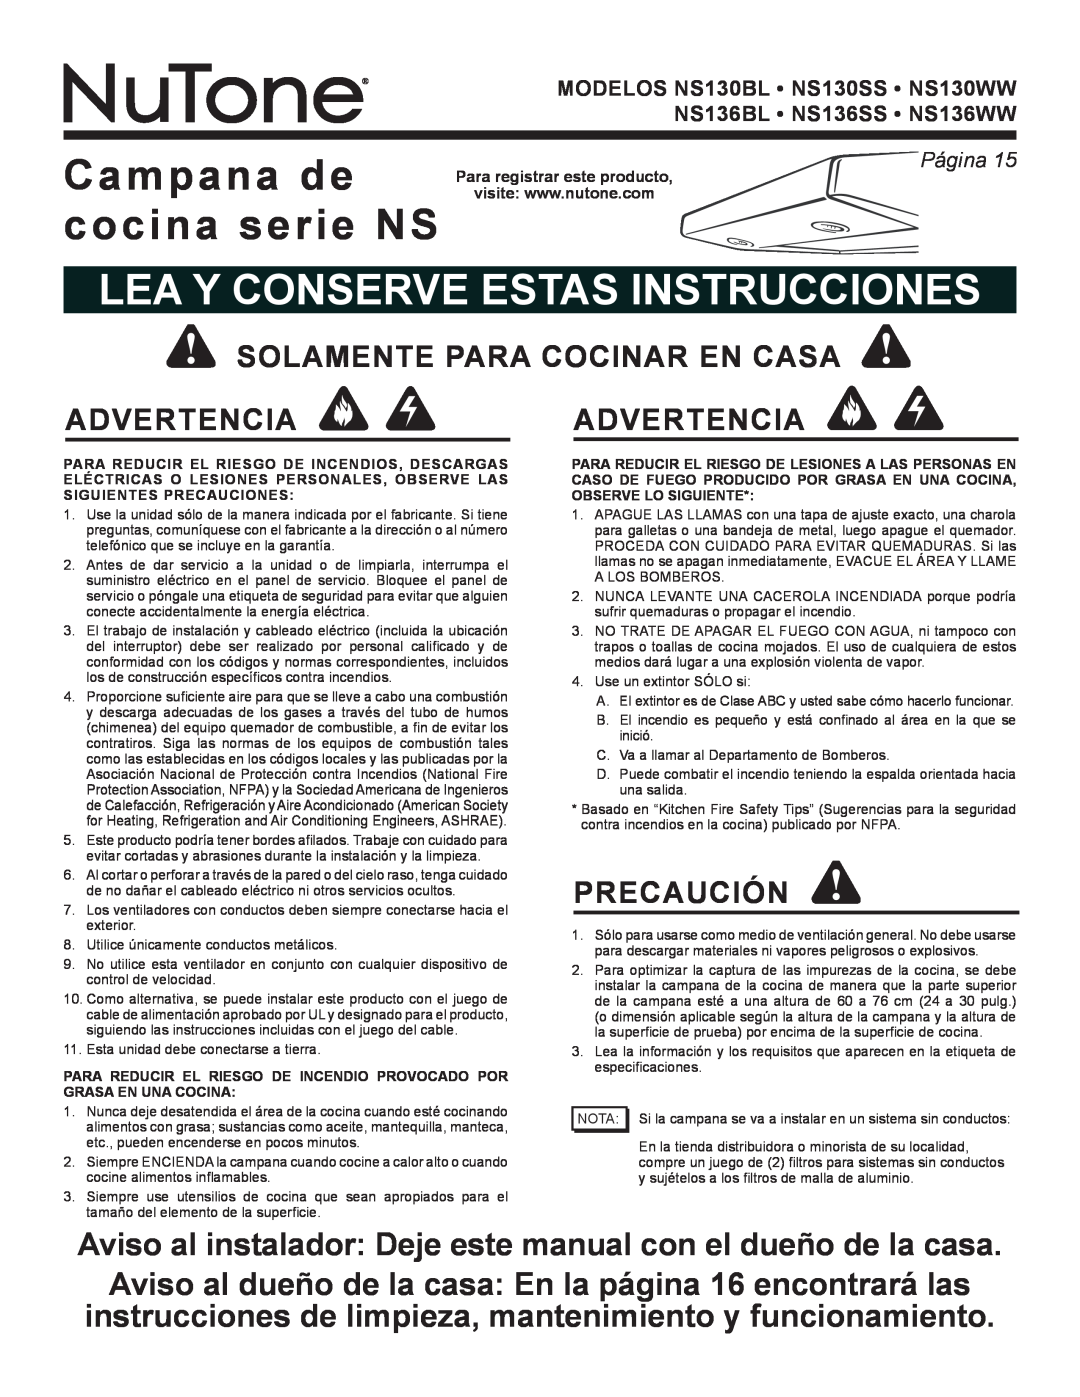 NuTone NS Series manual Campana de cocina serie NS, Lea Y Conserve Estas Instrucciones, Precaución, Página 